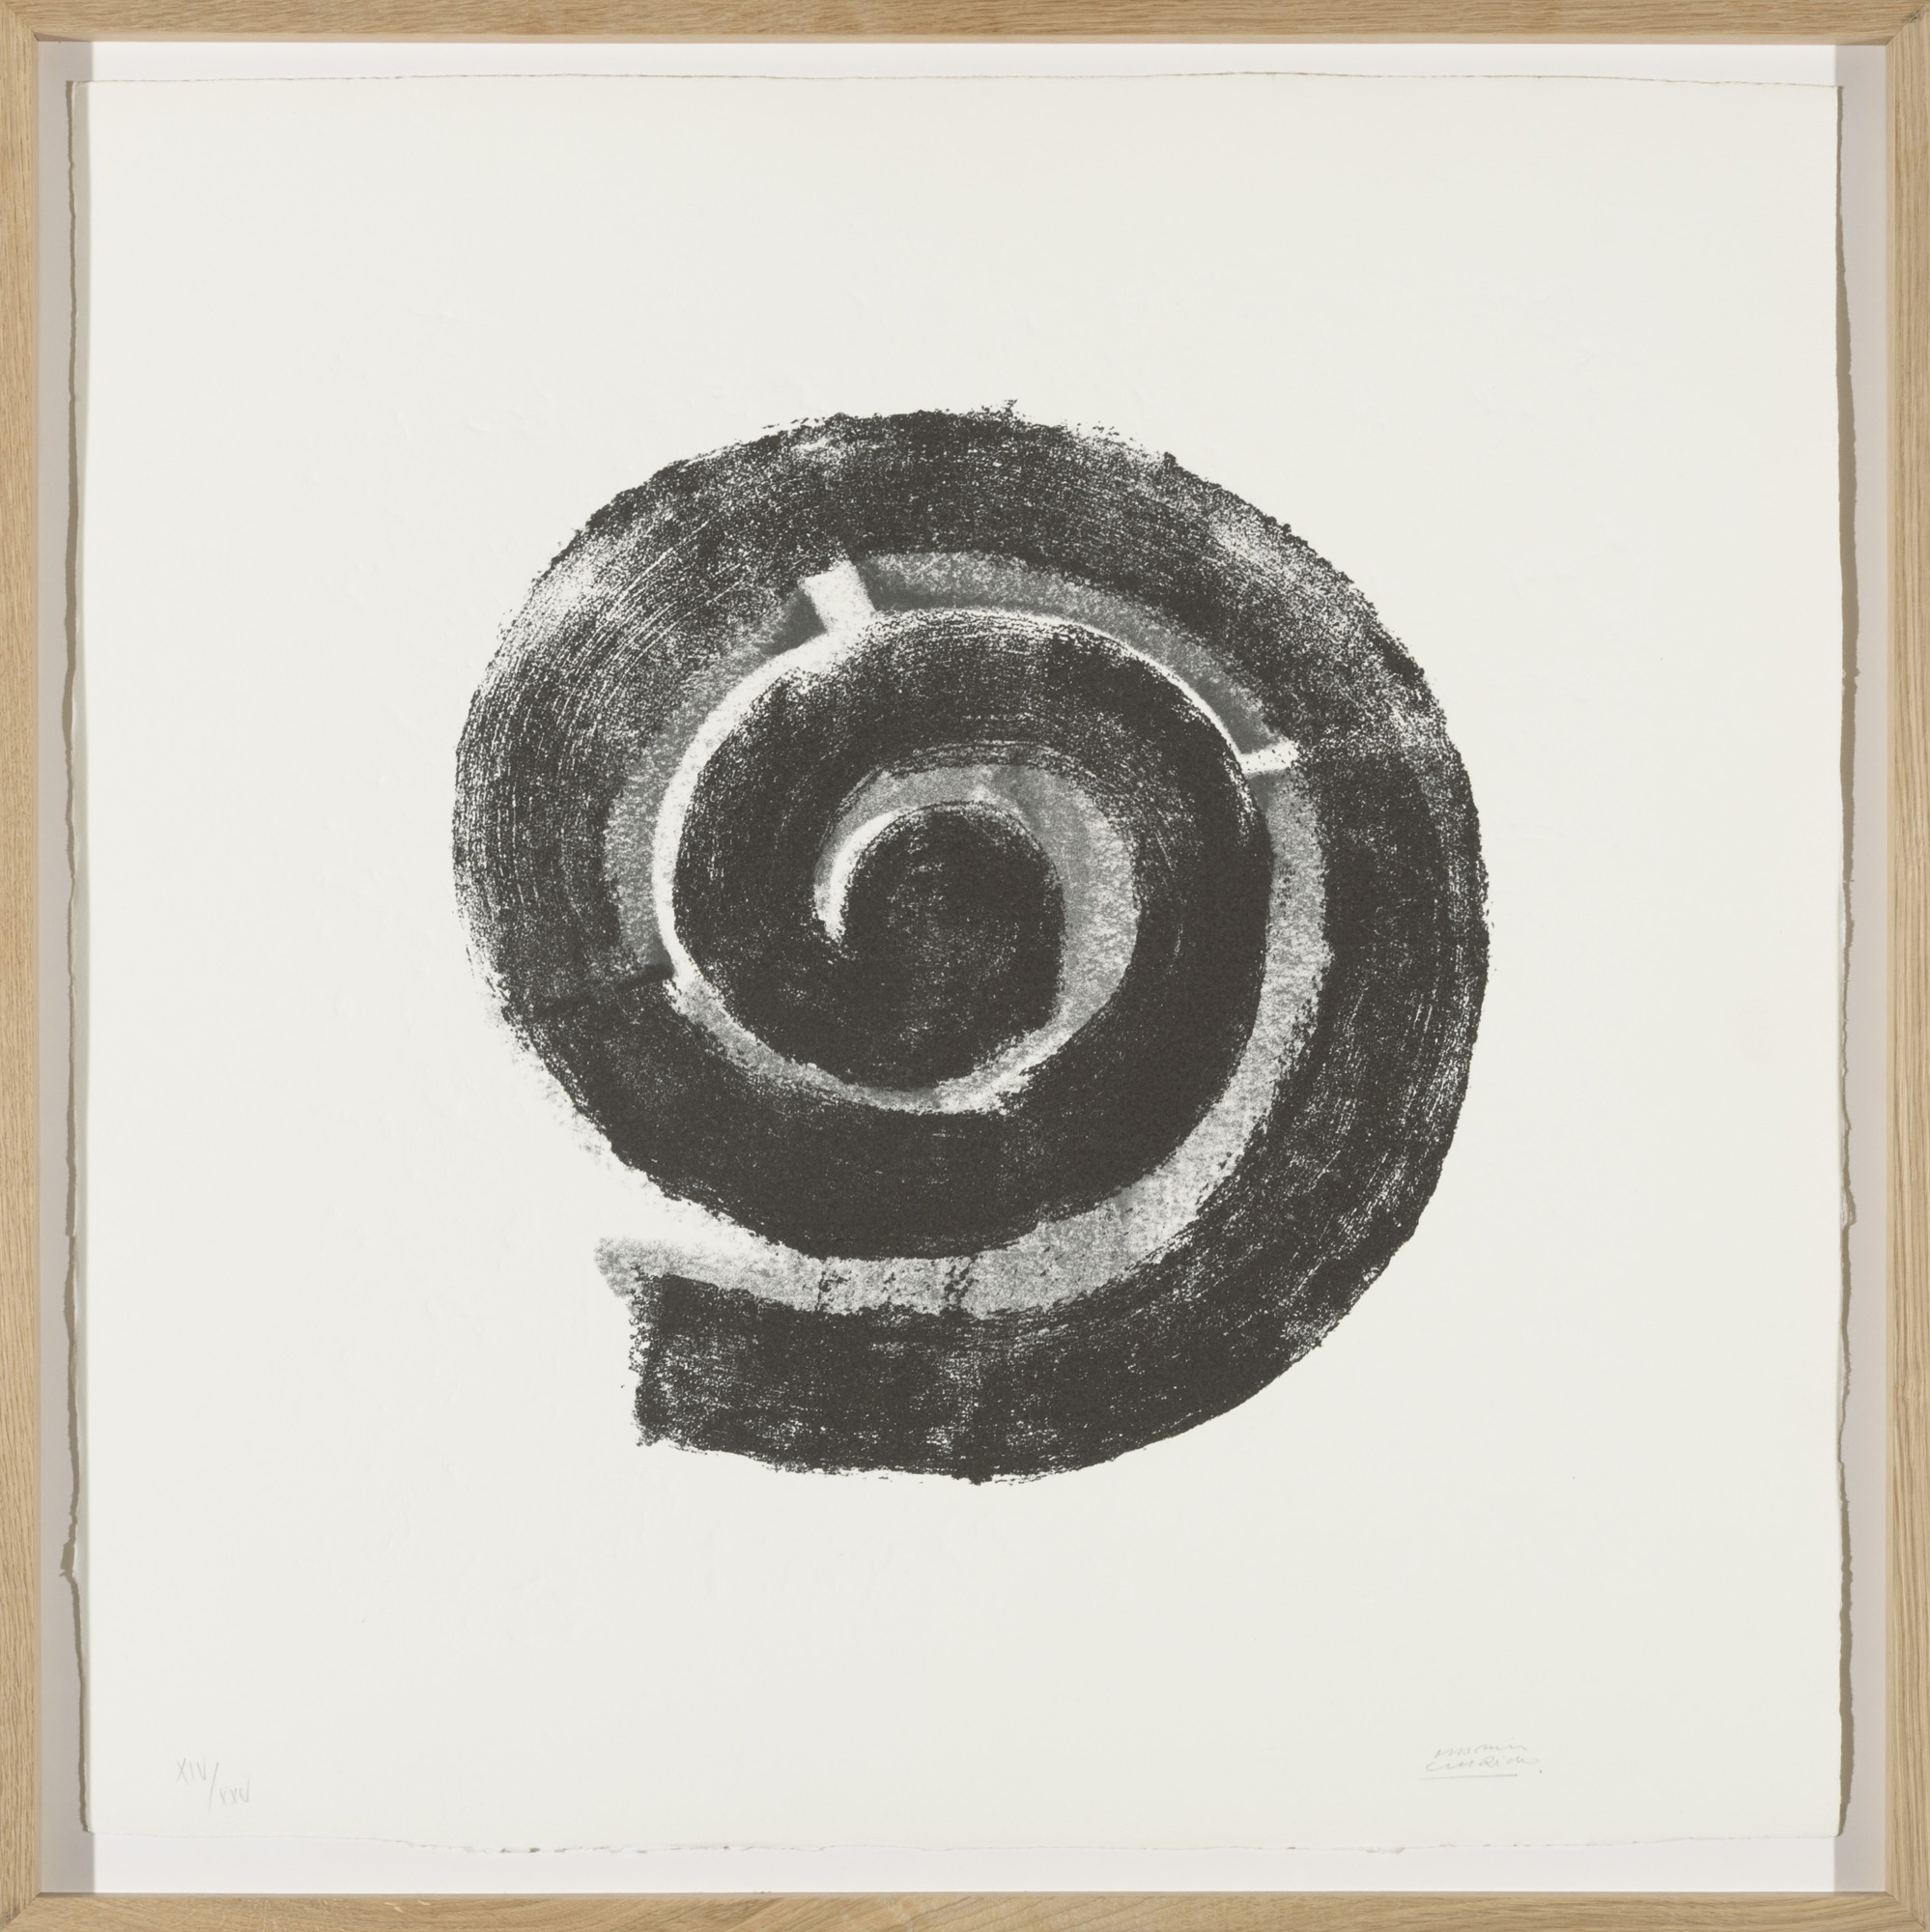 La espiral, 2005